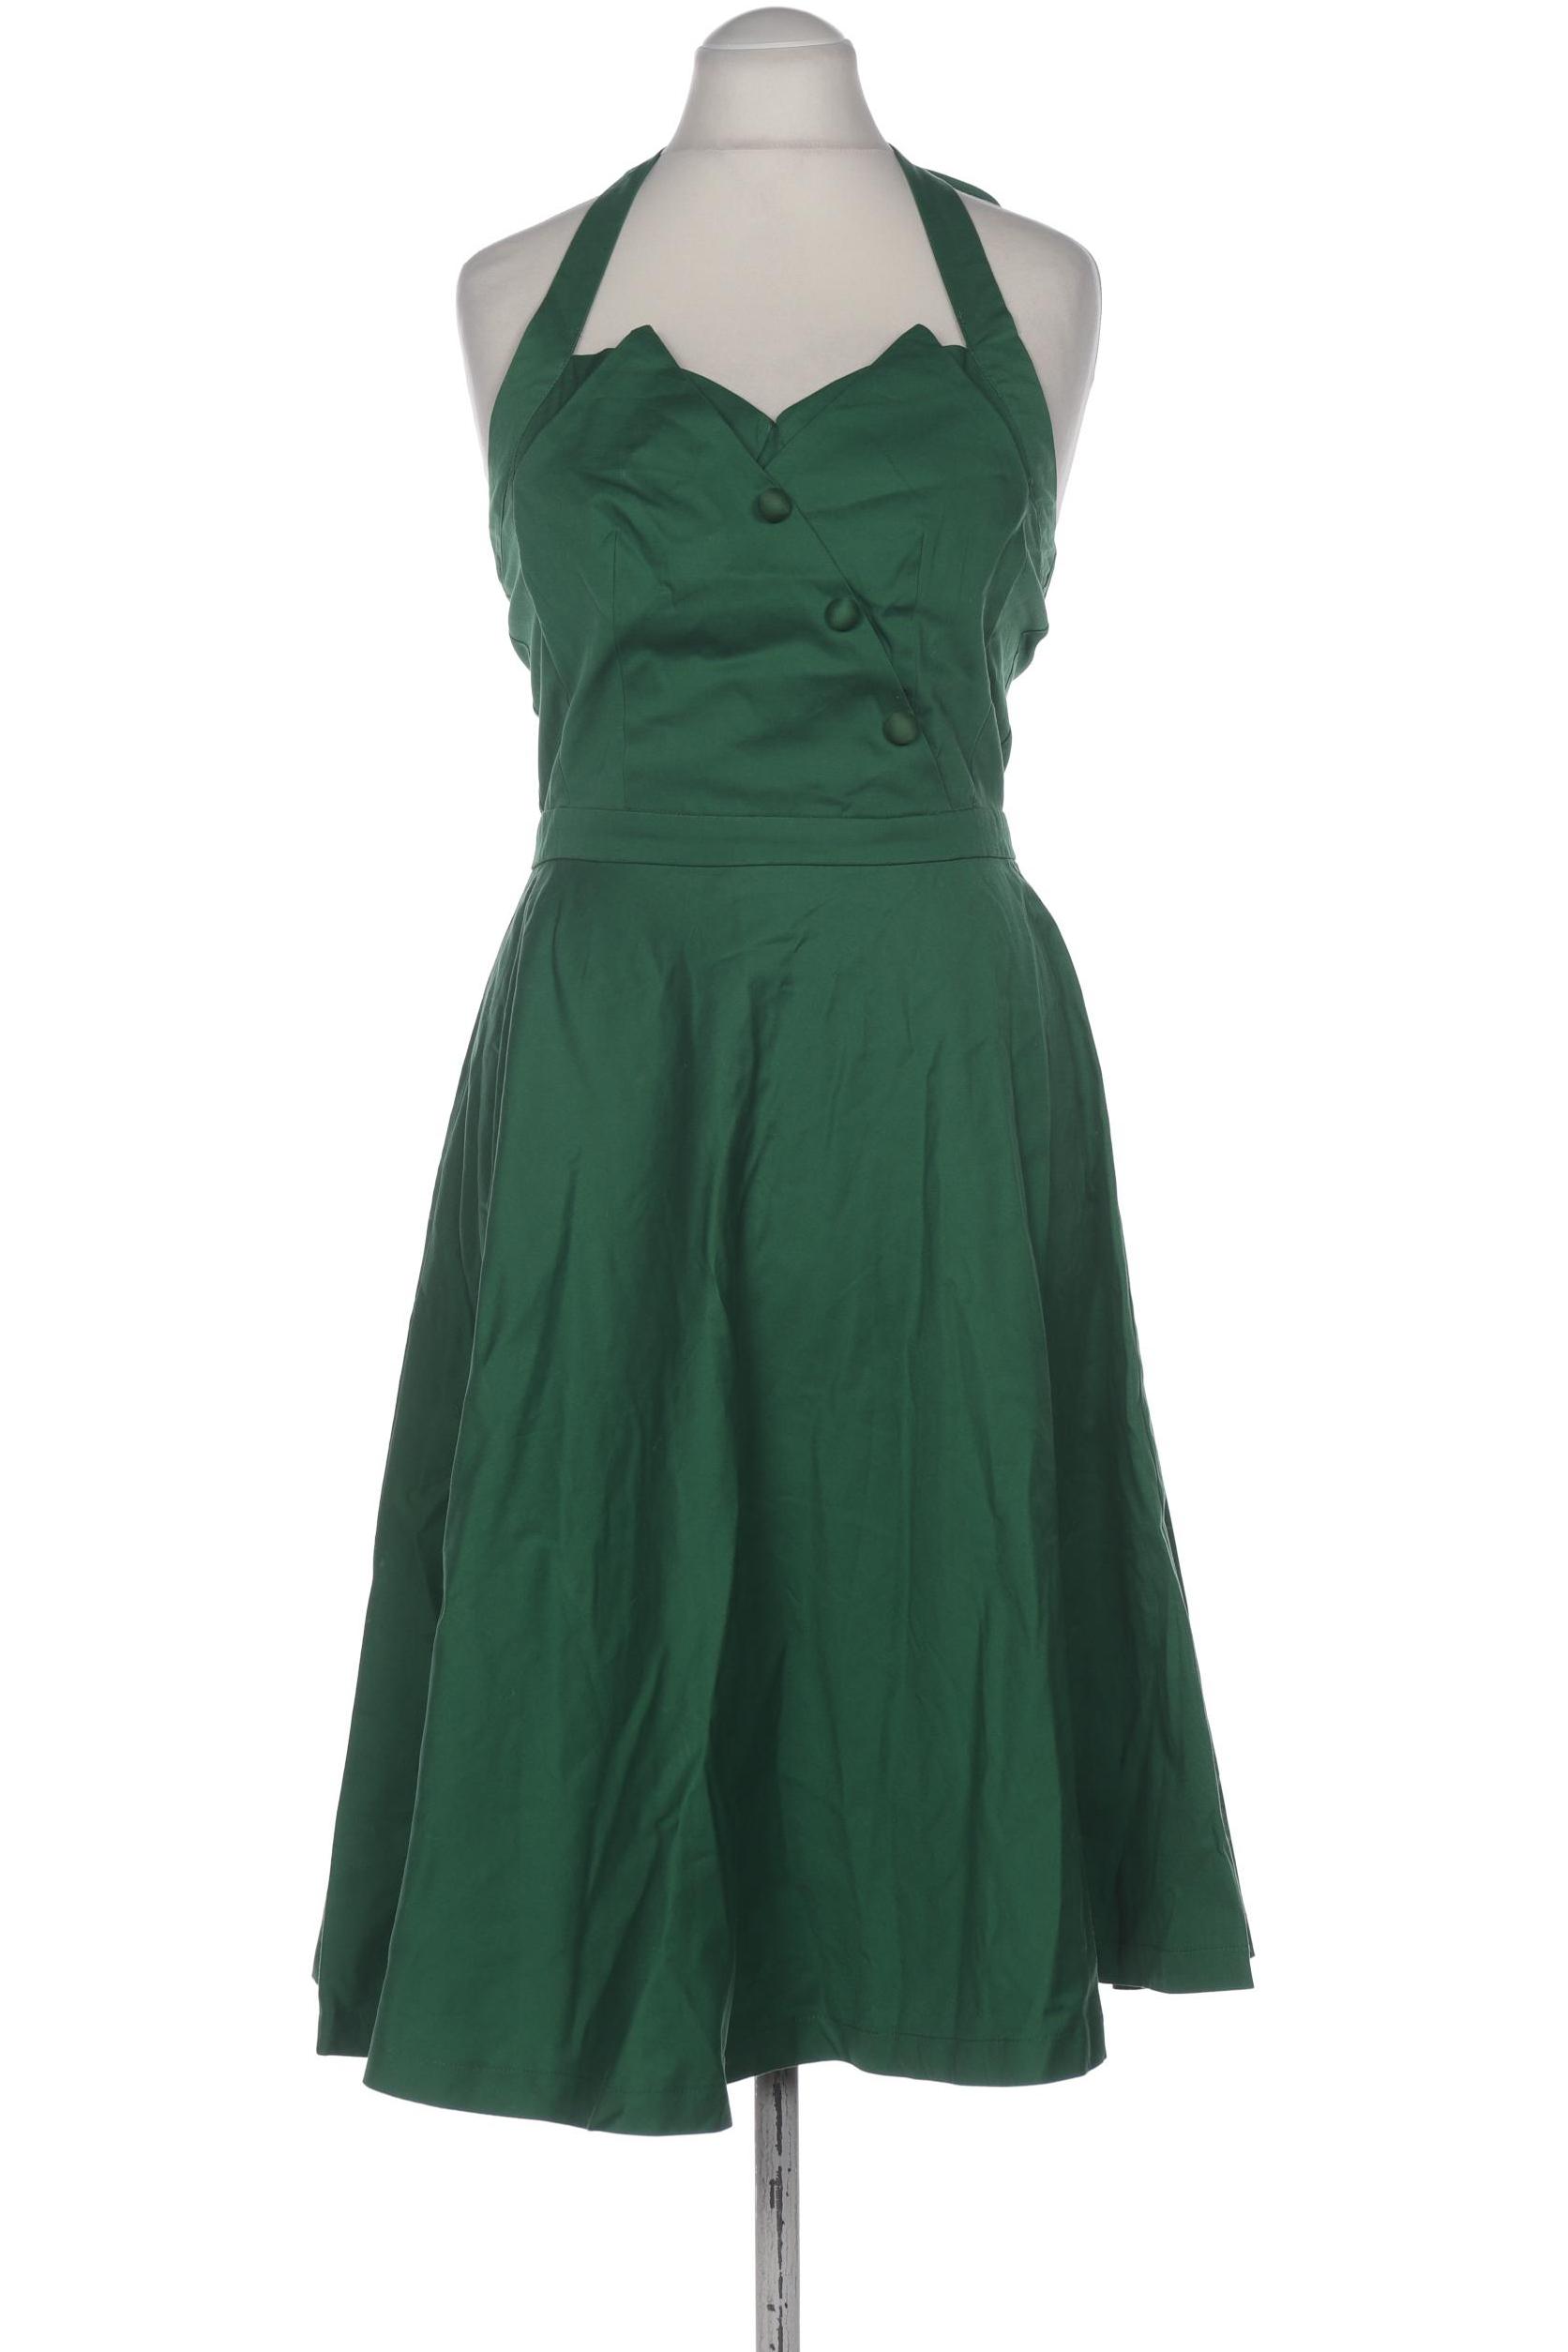 Lindy Bop Damen Kleid, grün, Gr. 40 von lindy bop